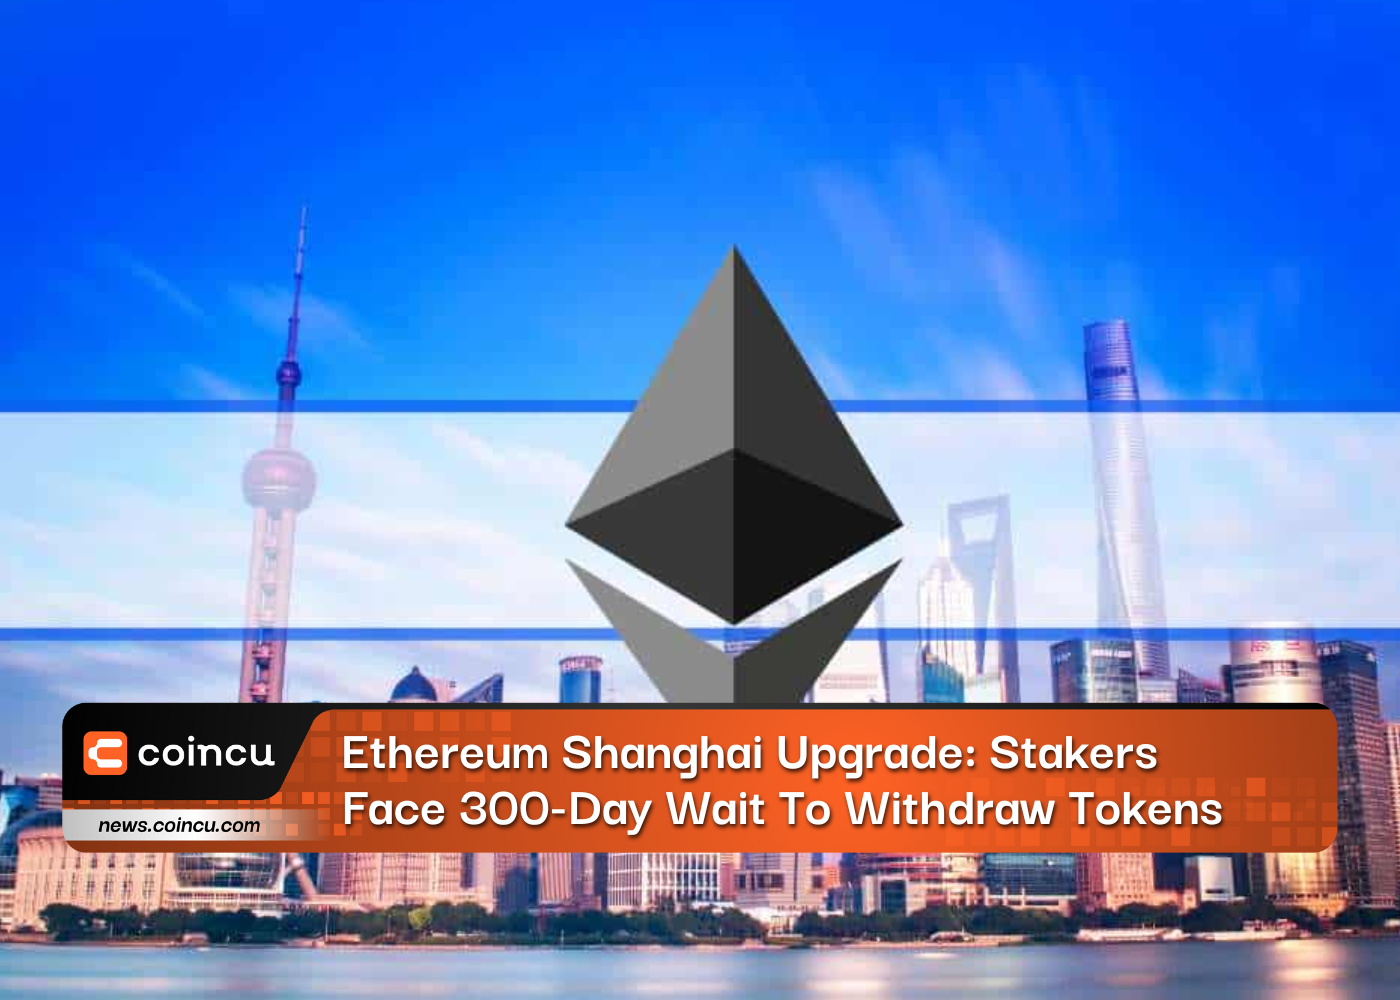 Nâng cấp Ethereum Thượng Hải: Người đặt cược phải chờ 300 ngày để rút token